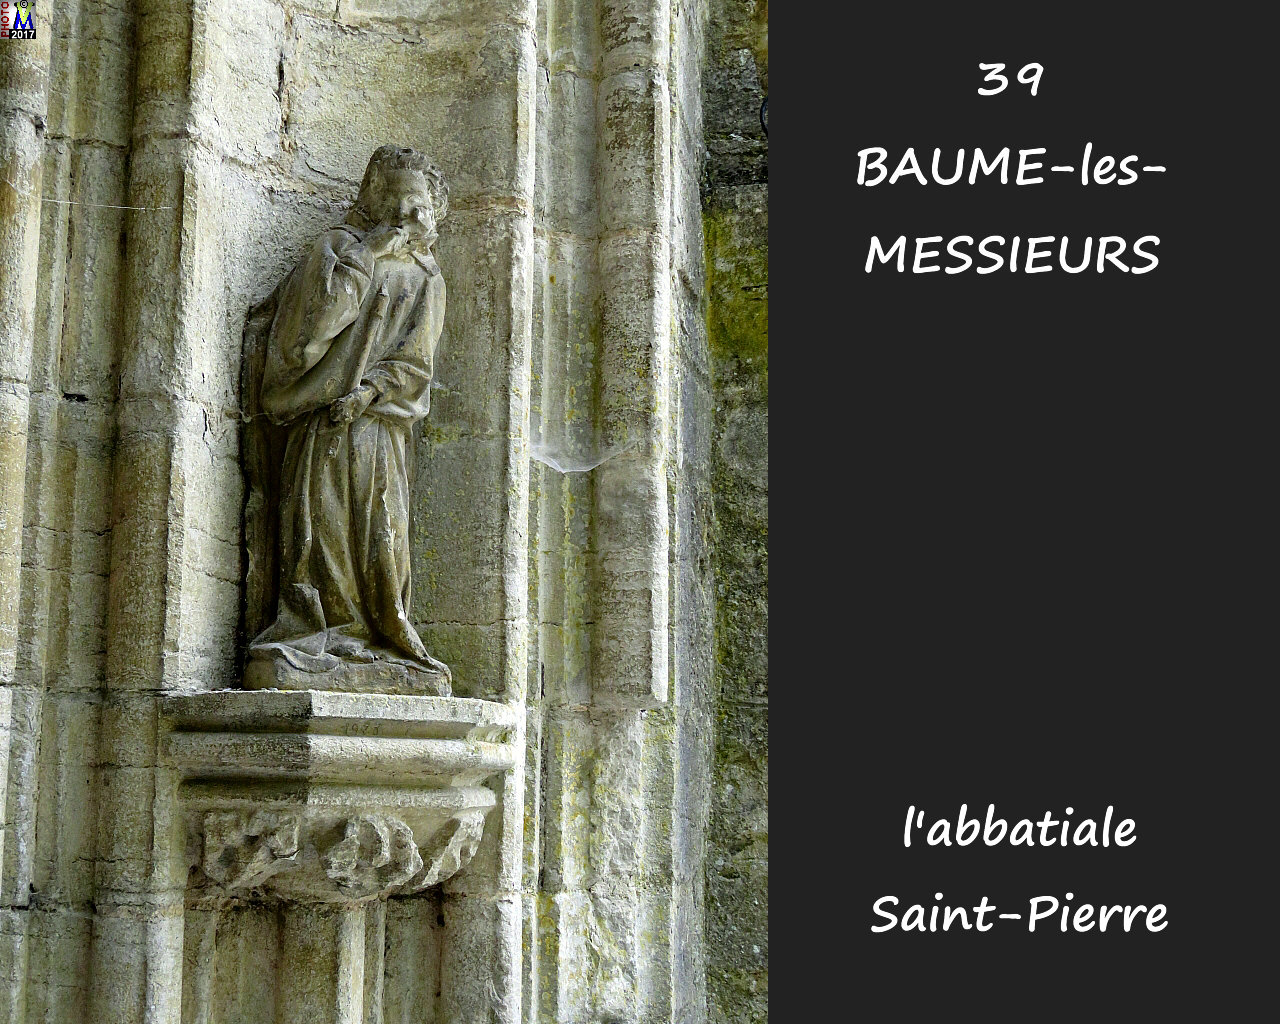 39BAUME-LES-MESSIEURS_abbatiale_114.jpg